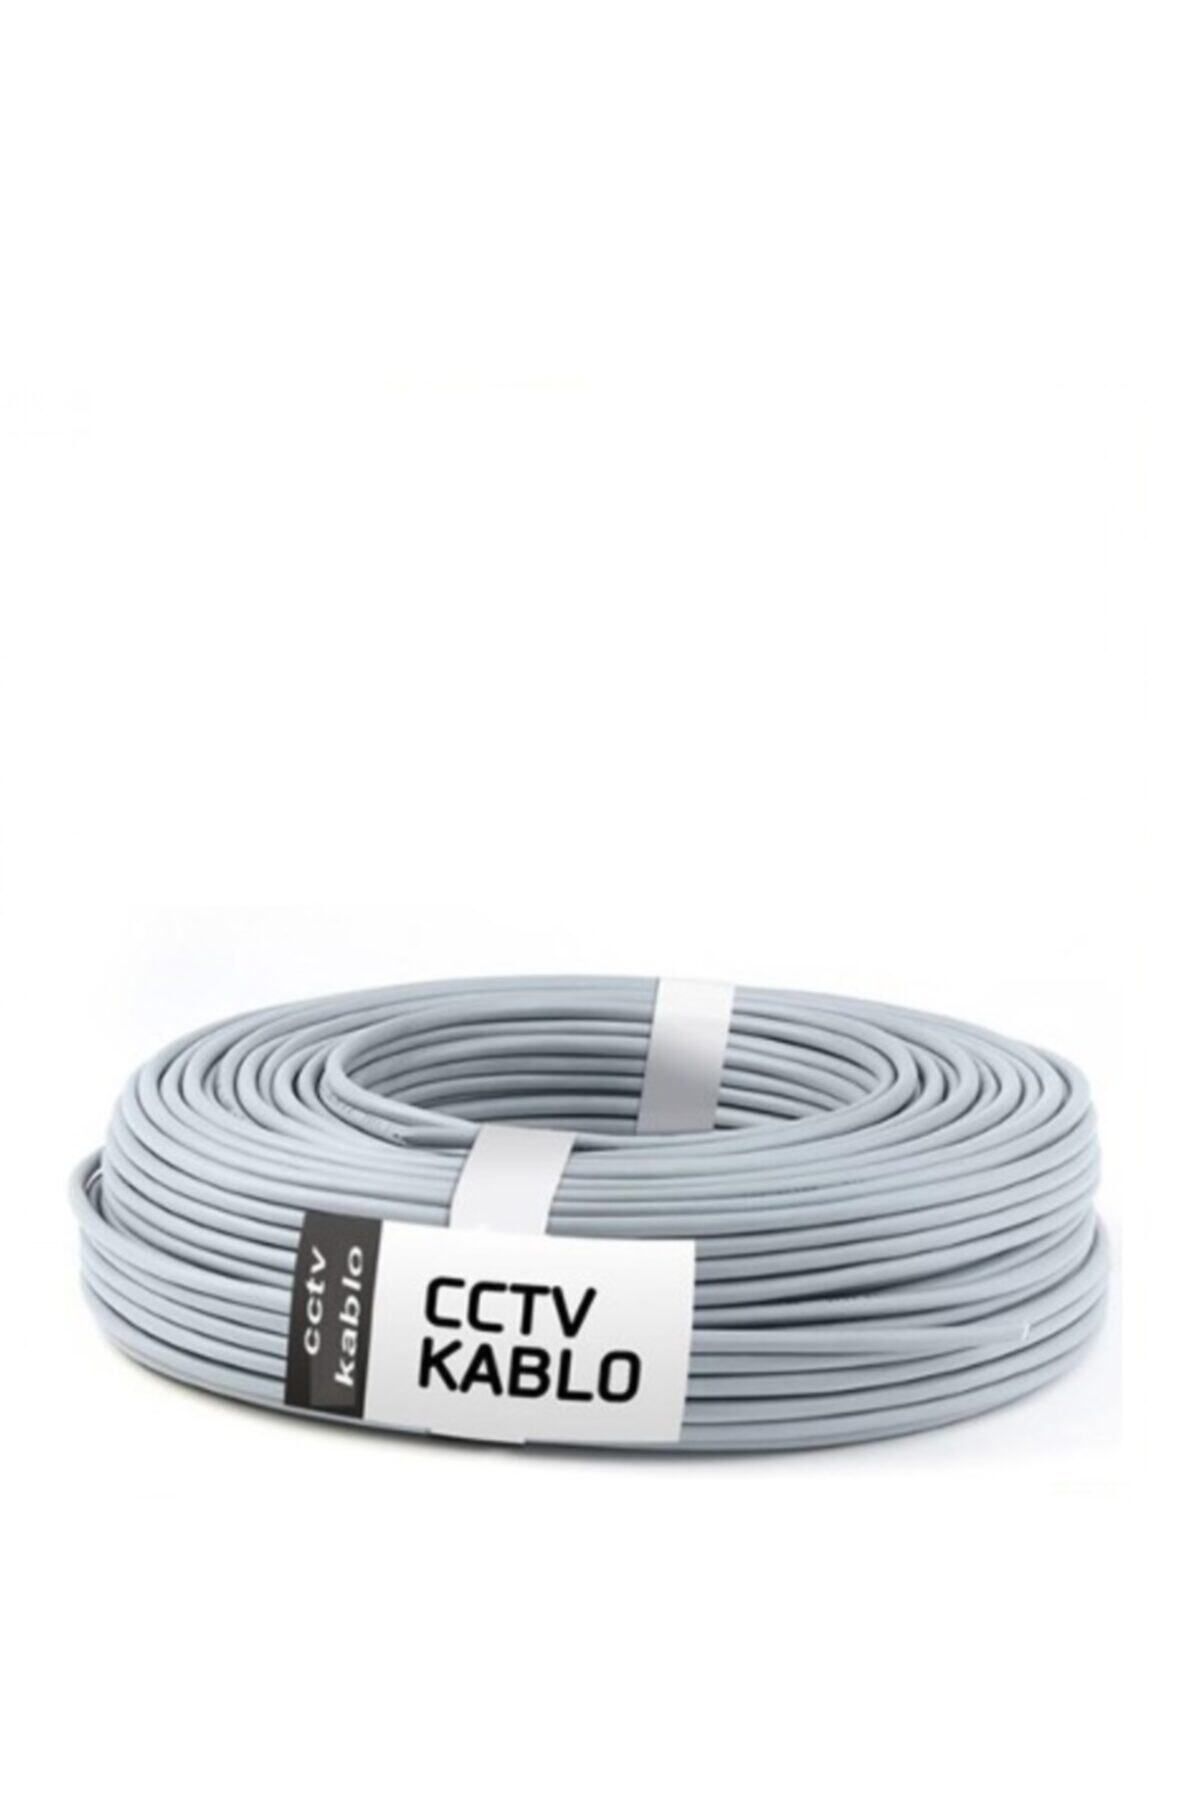 CCTV Kamera Montaj Kablosu 100 Metre 2+1 Kablo 0,50mm